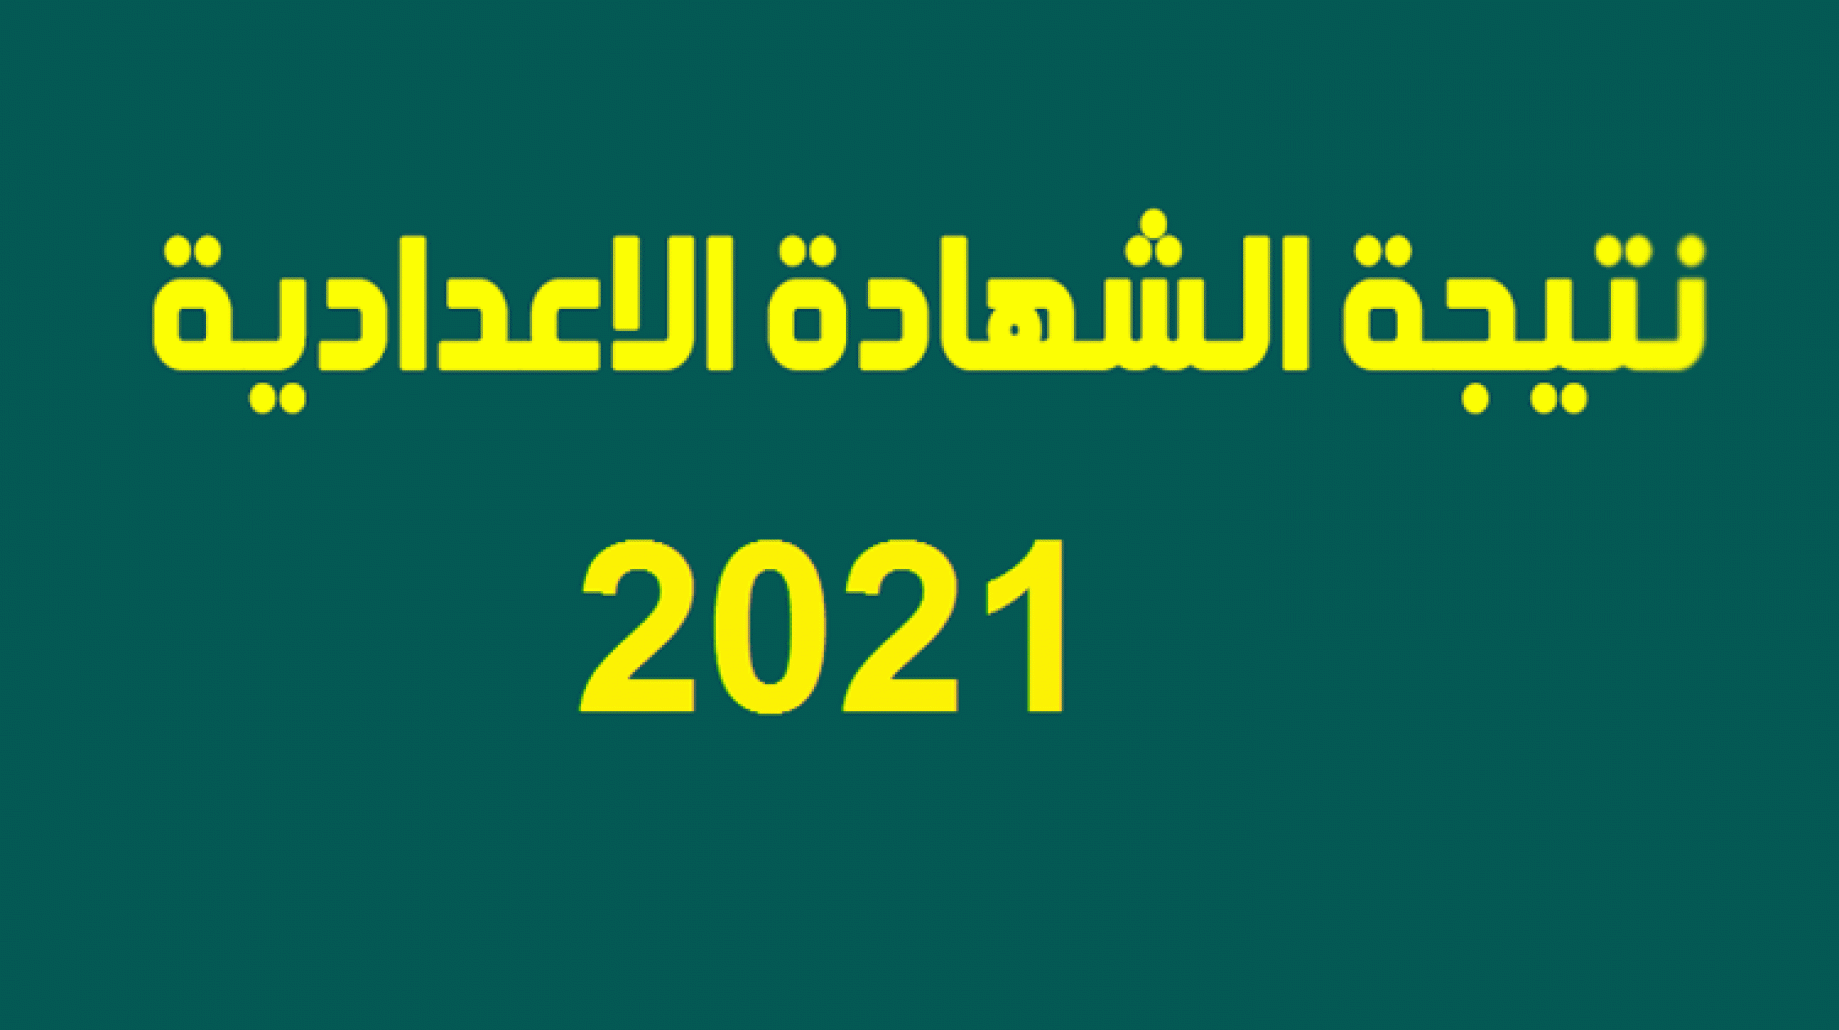 موقع نتيجة الصف الثالث الاعدادي 2021 ترم ثاني على مستوي كافة المحافظات المصرية برقم الجلوس